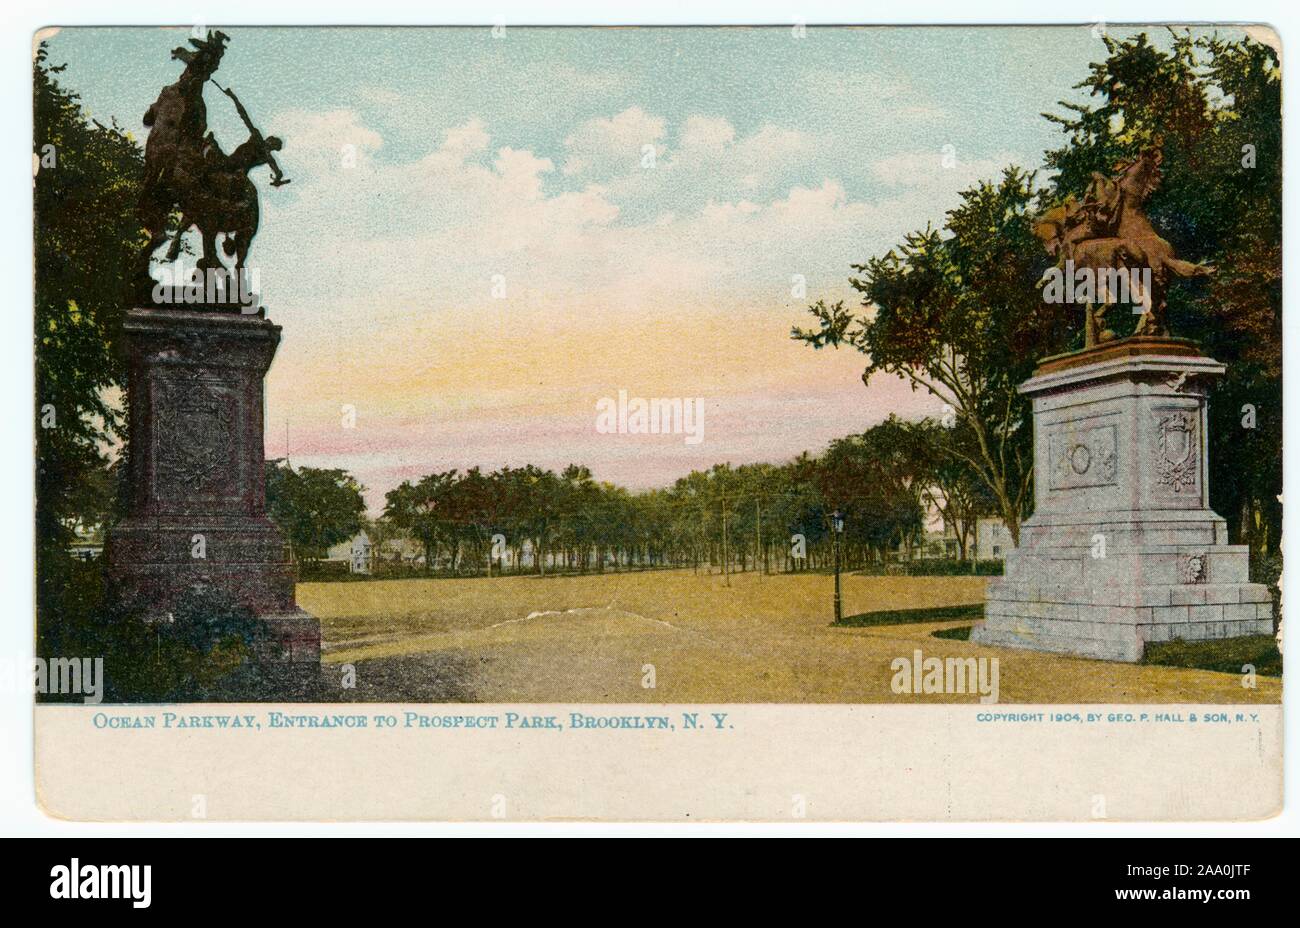 Cartolina illustrata dell'Oceano Parkway ingresso al Prospect Park di Brooklyn, a New York City, creato e pubblicato da Geo, 1904. P. Hall e figlio. Dalla Biblioteca Pubblica di New York. () Foto Stock